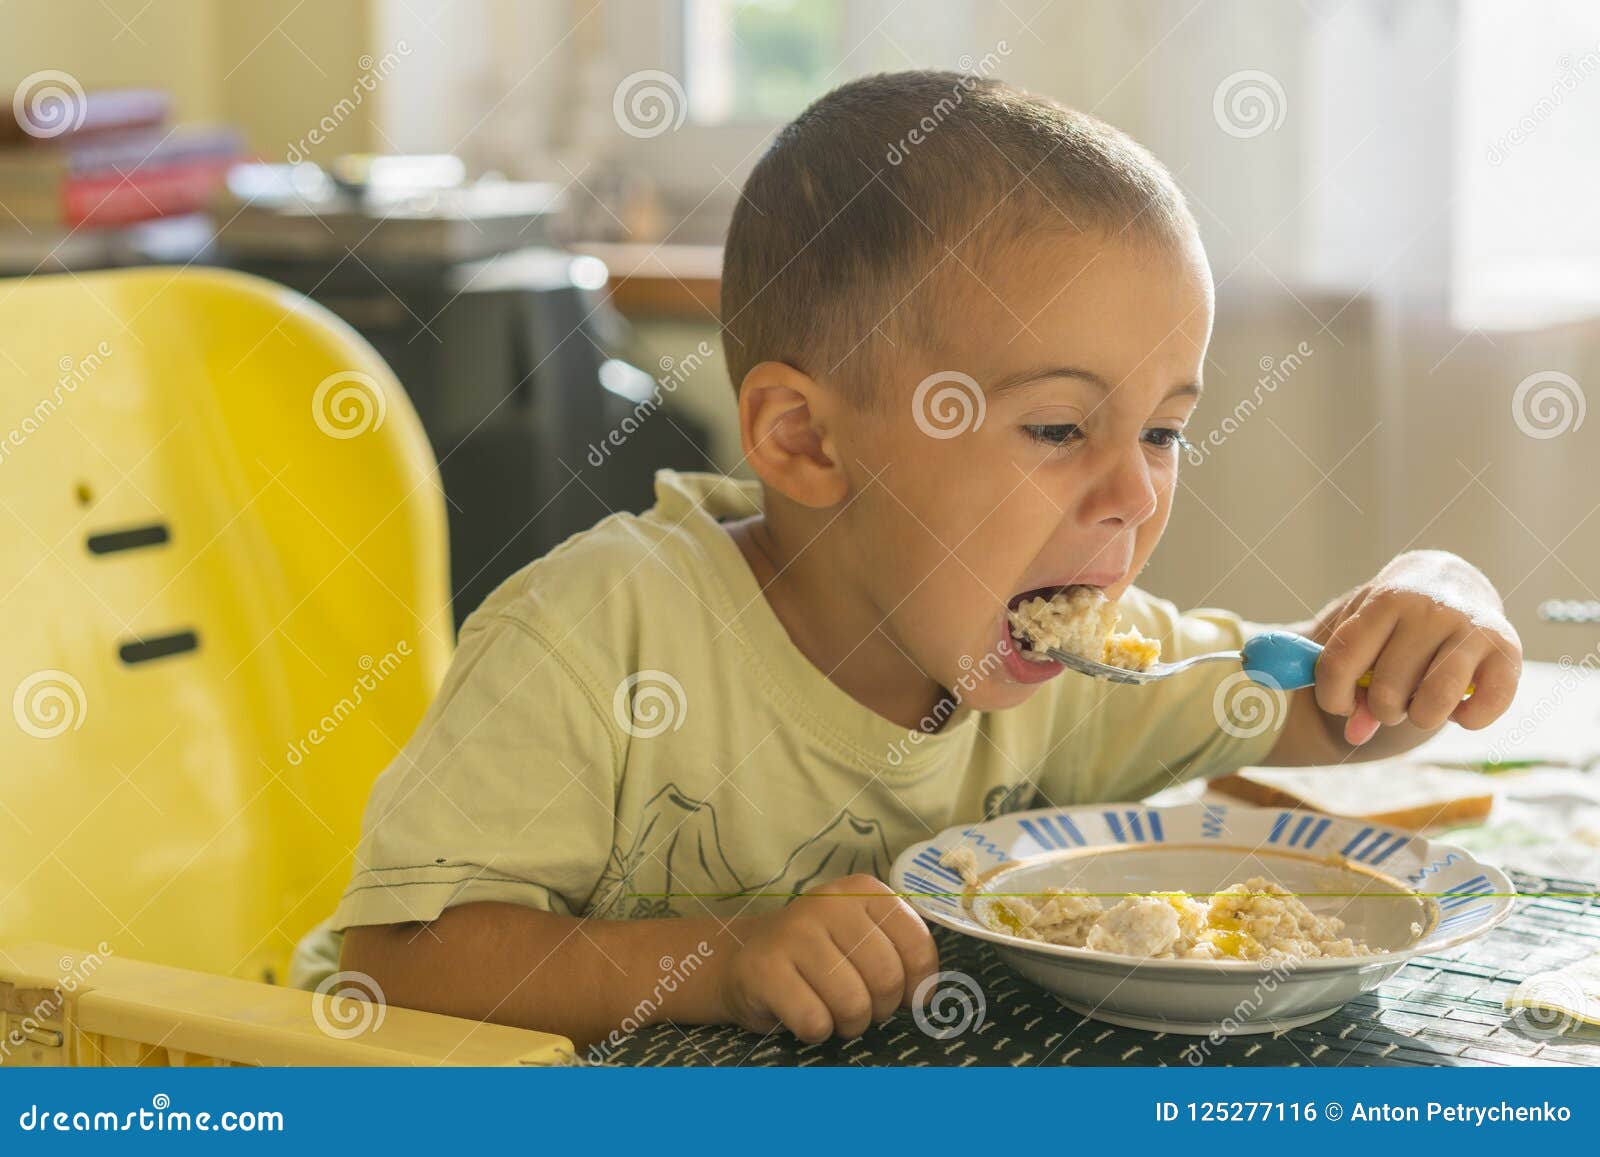 Мужик ест ребенка. Мальчик кушает кашу. Кушать кашу. Мальчик ест кашу. Каша для детей.